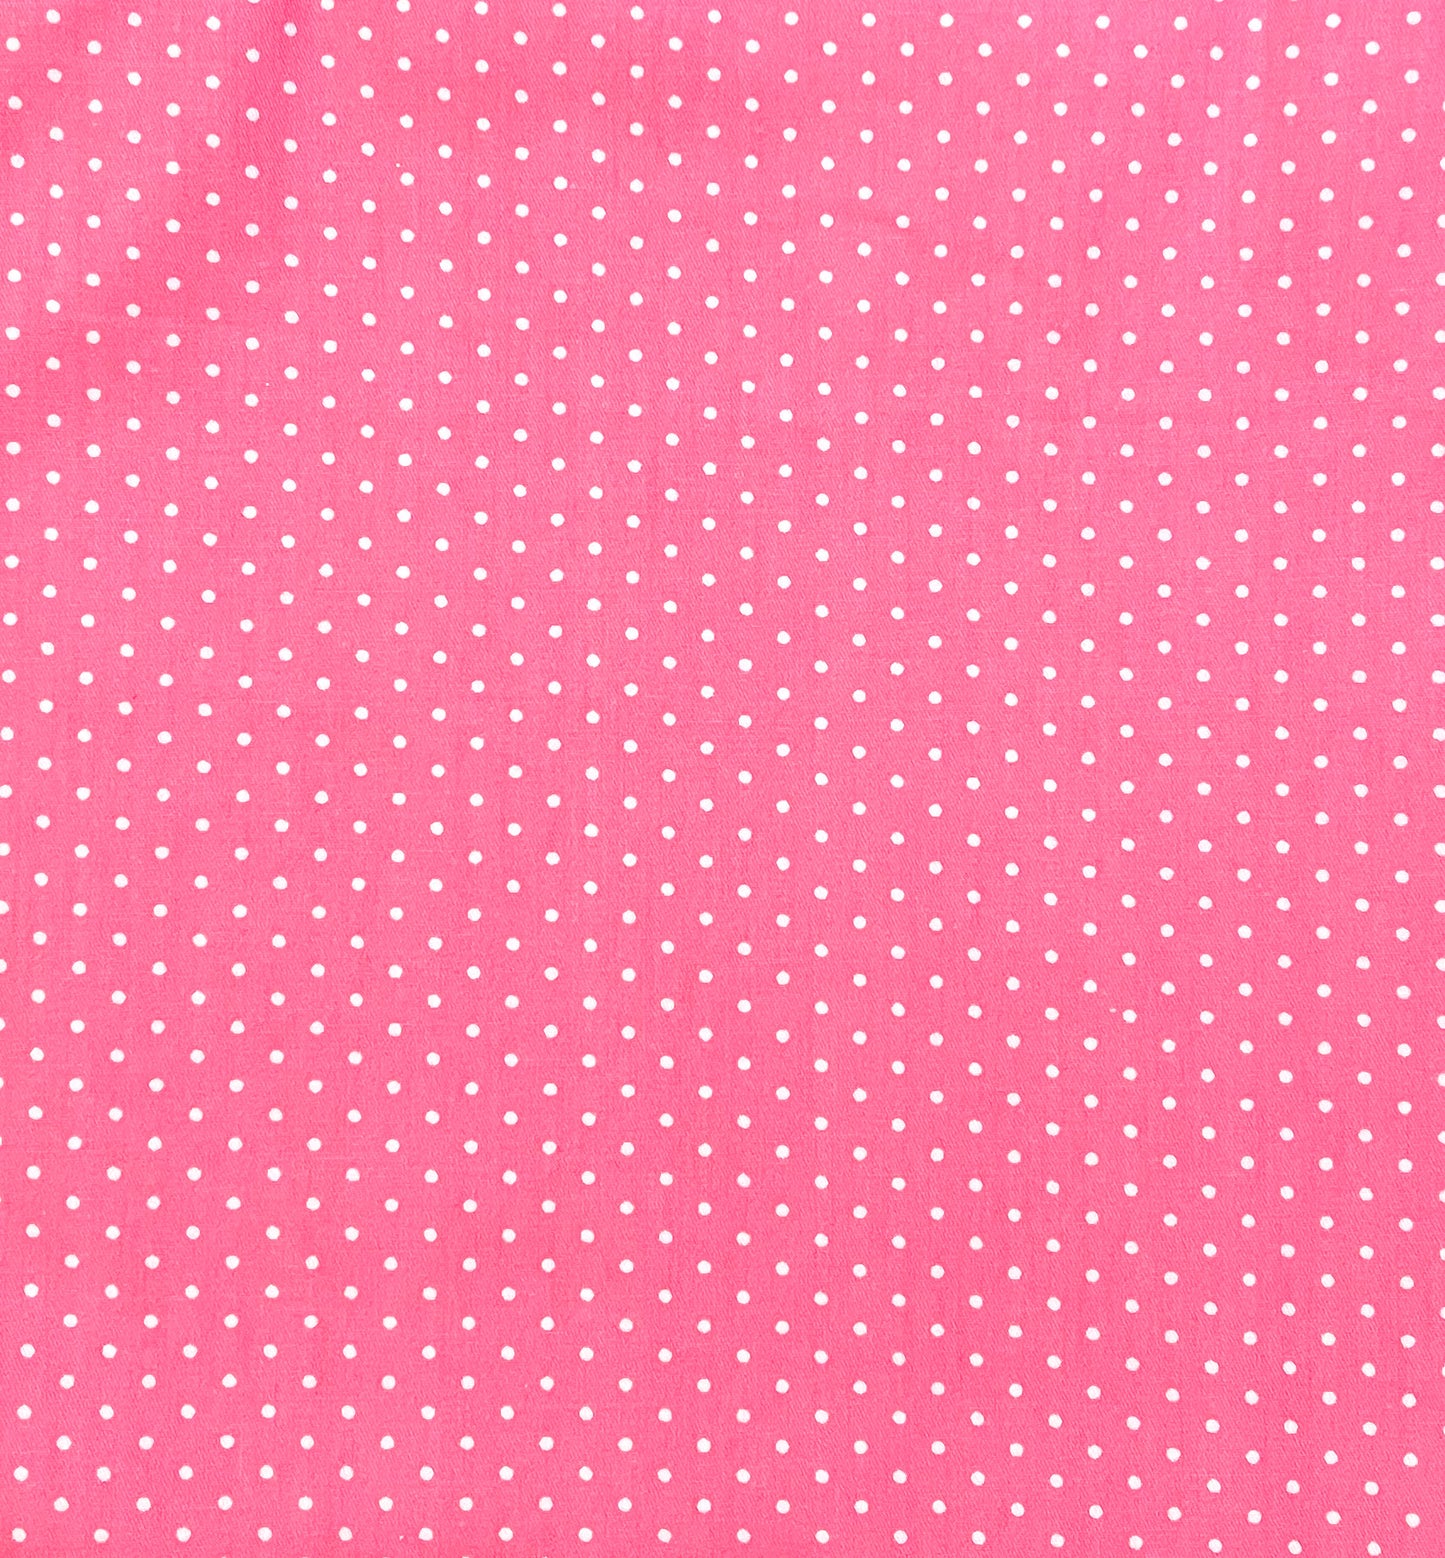 White dots on dark pink